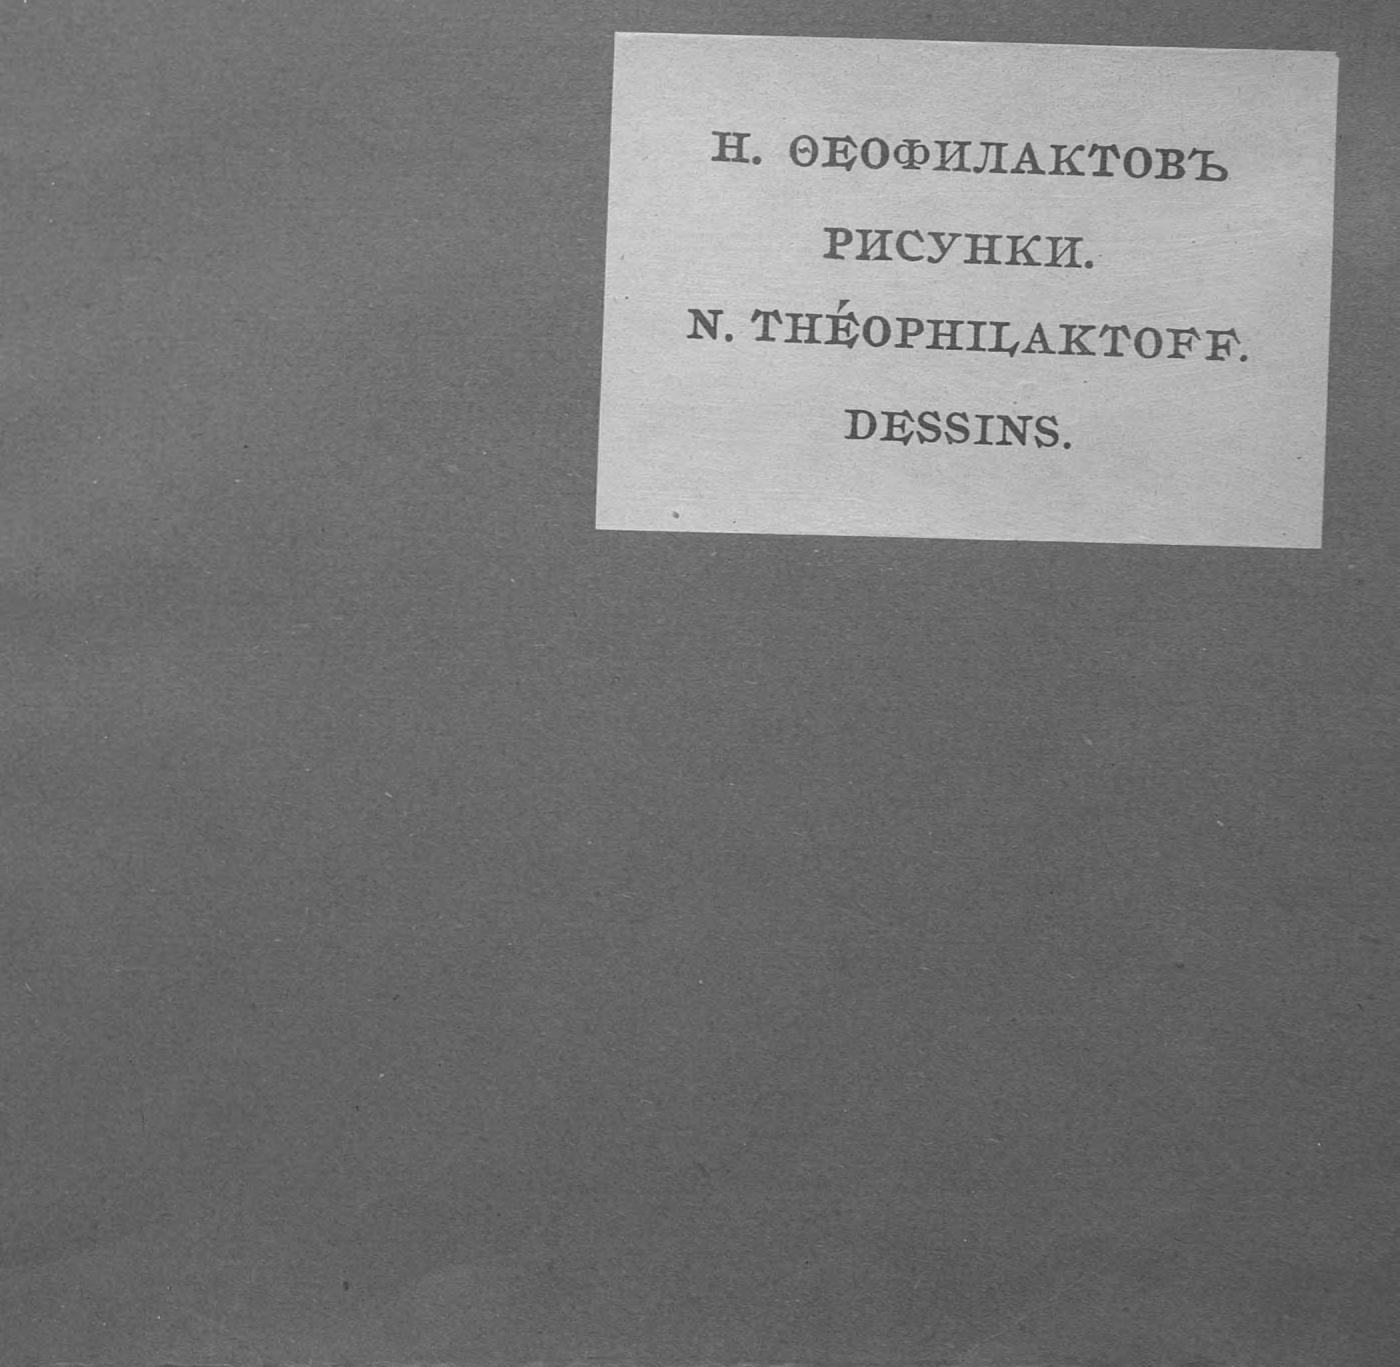 Н. Феофилактов. 66 рисунков = N. Théophilaktoff. 66 Dessins. — Москва : Книгоиздательство «Скорпион», 1909